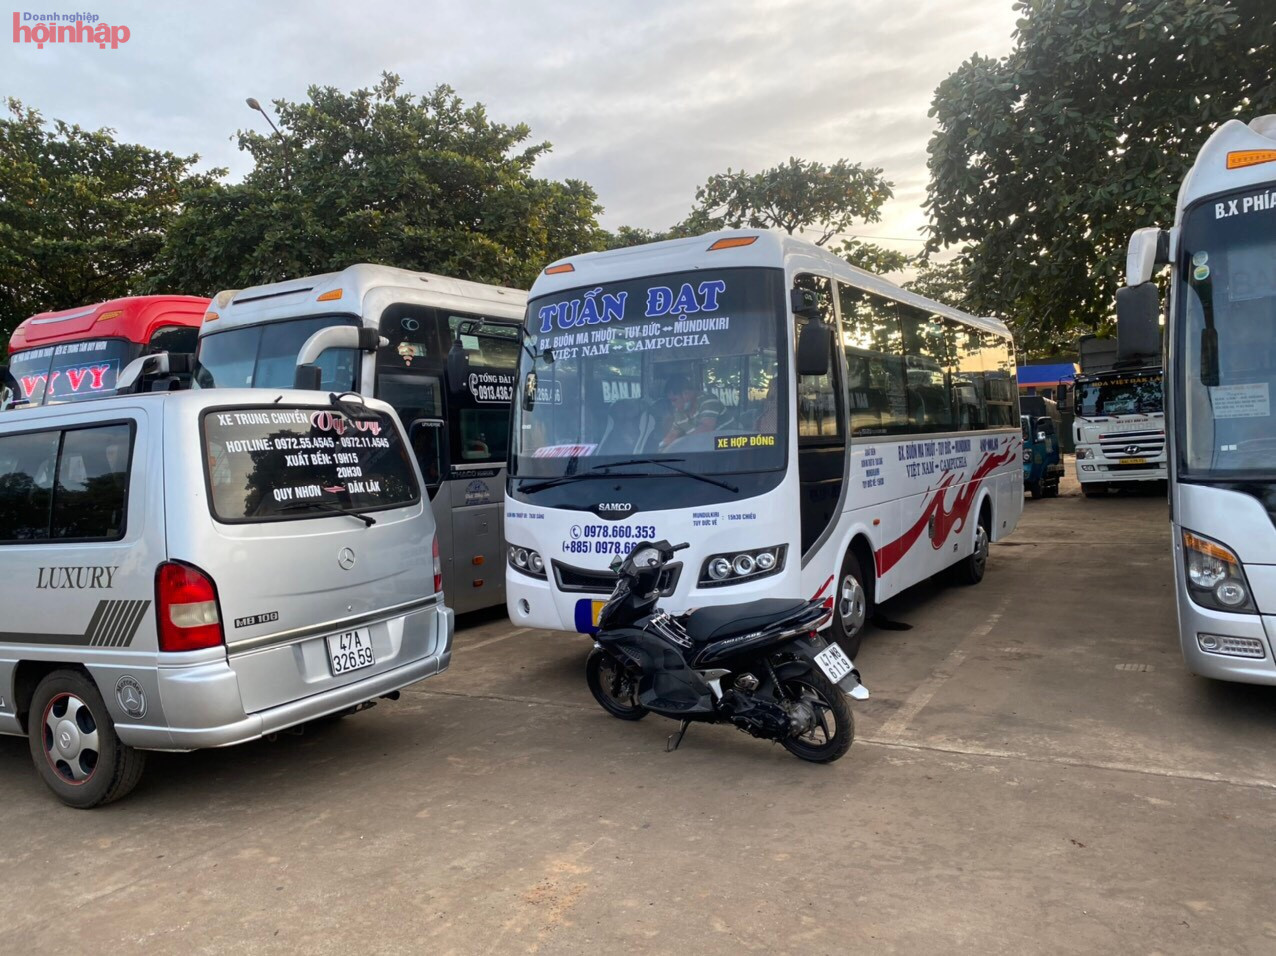 Đây chính là dịch vụ vận tải quan trong phục vụ nhu cầu vận tải hành khách, hàng hóa, du lịch của người dân hai nước Việt Nam - Campuchia. Điều này cũng góp phần tăng cường quan hệ giao thương giữa các tỉnh Tây Nguyên với nước bạn Campuchia.